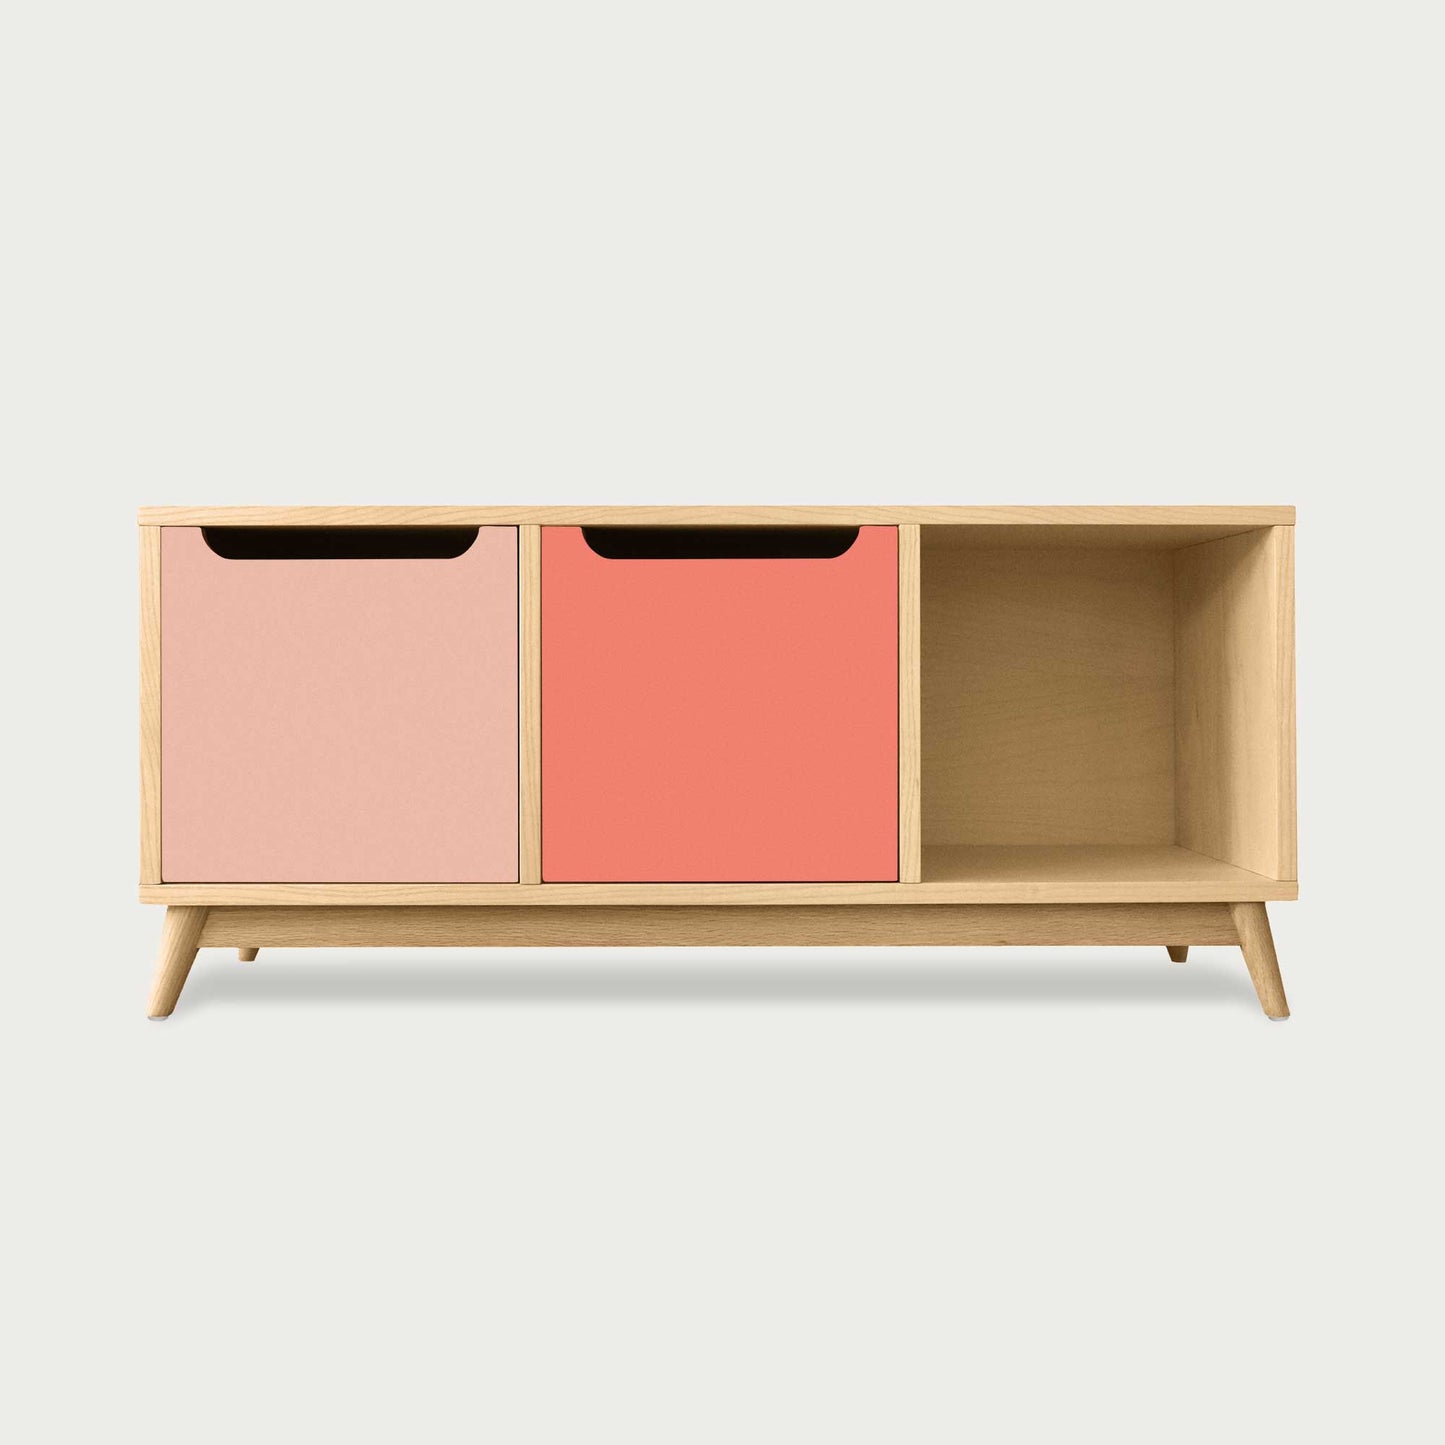 meuble bas à tiroirs KILT de la marque Kulile en chêne naturel et duo rose